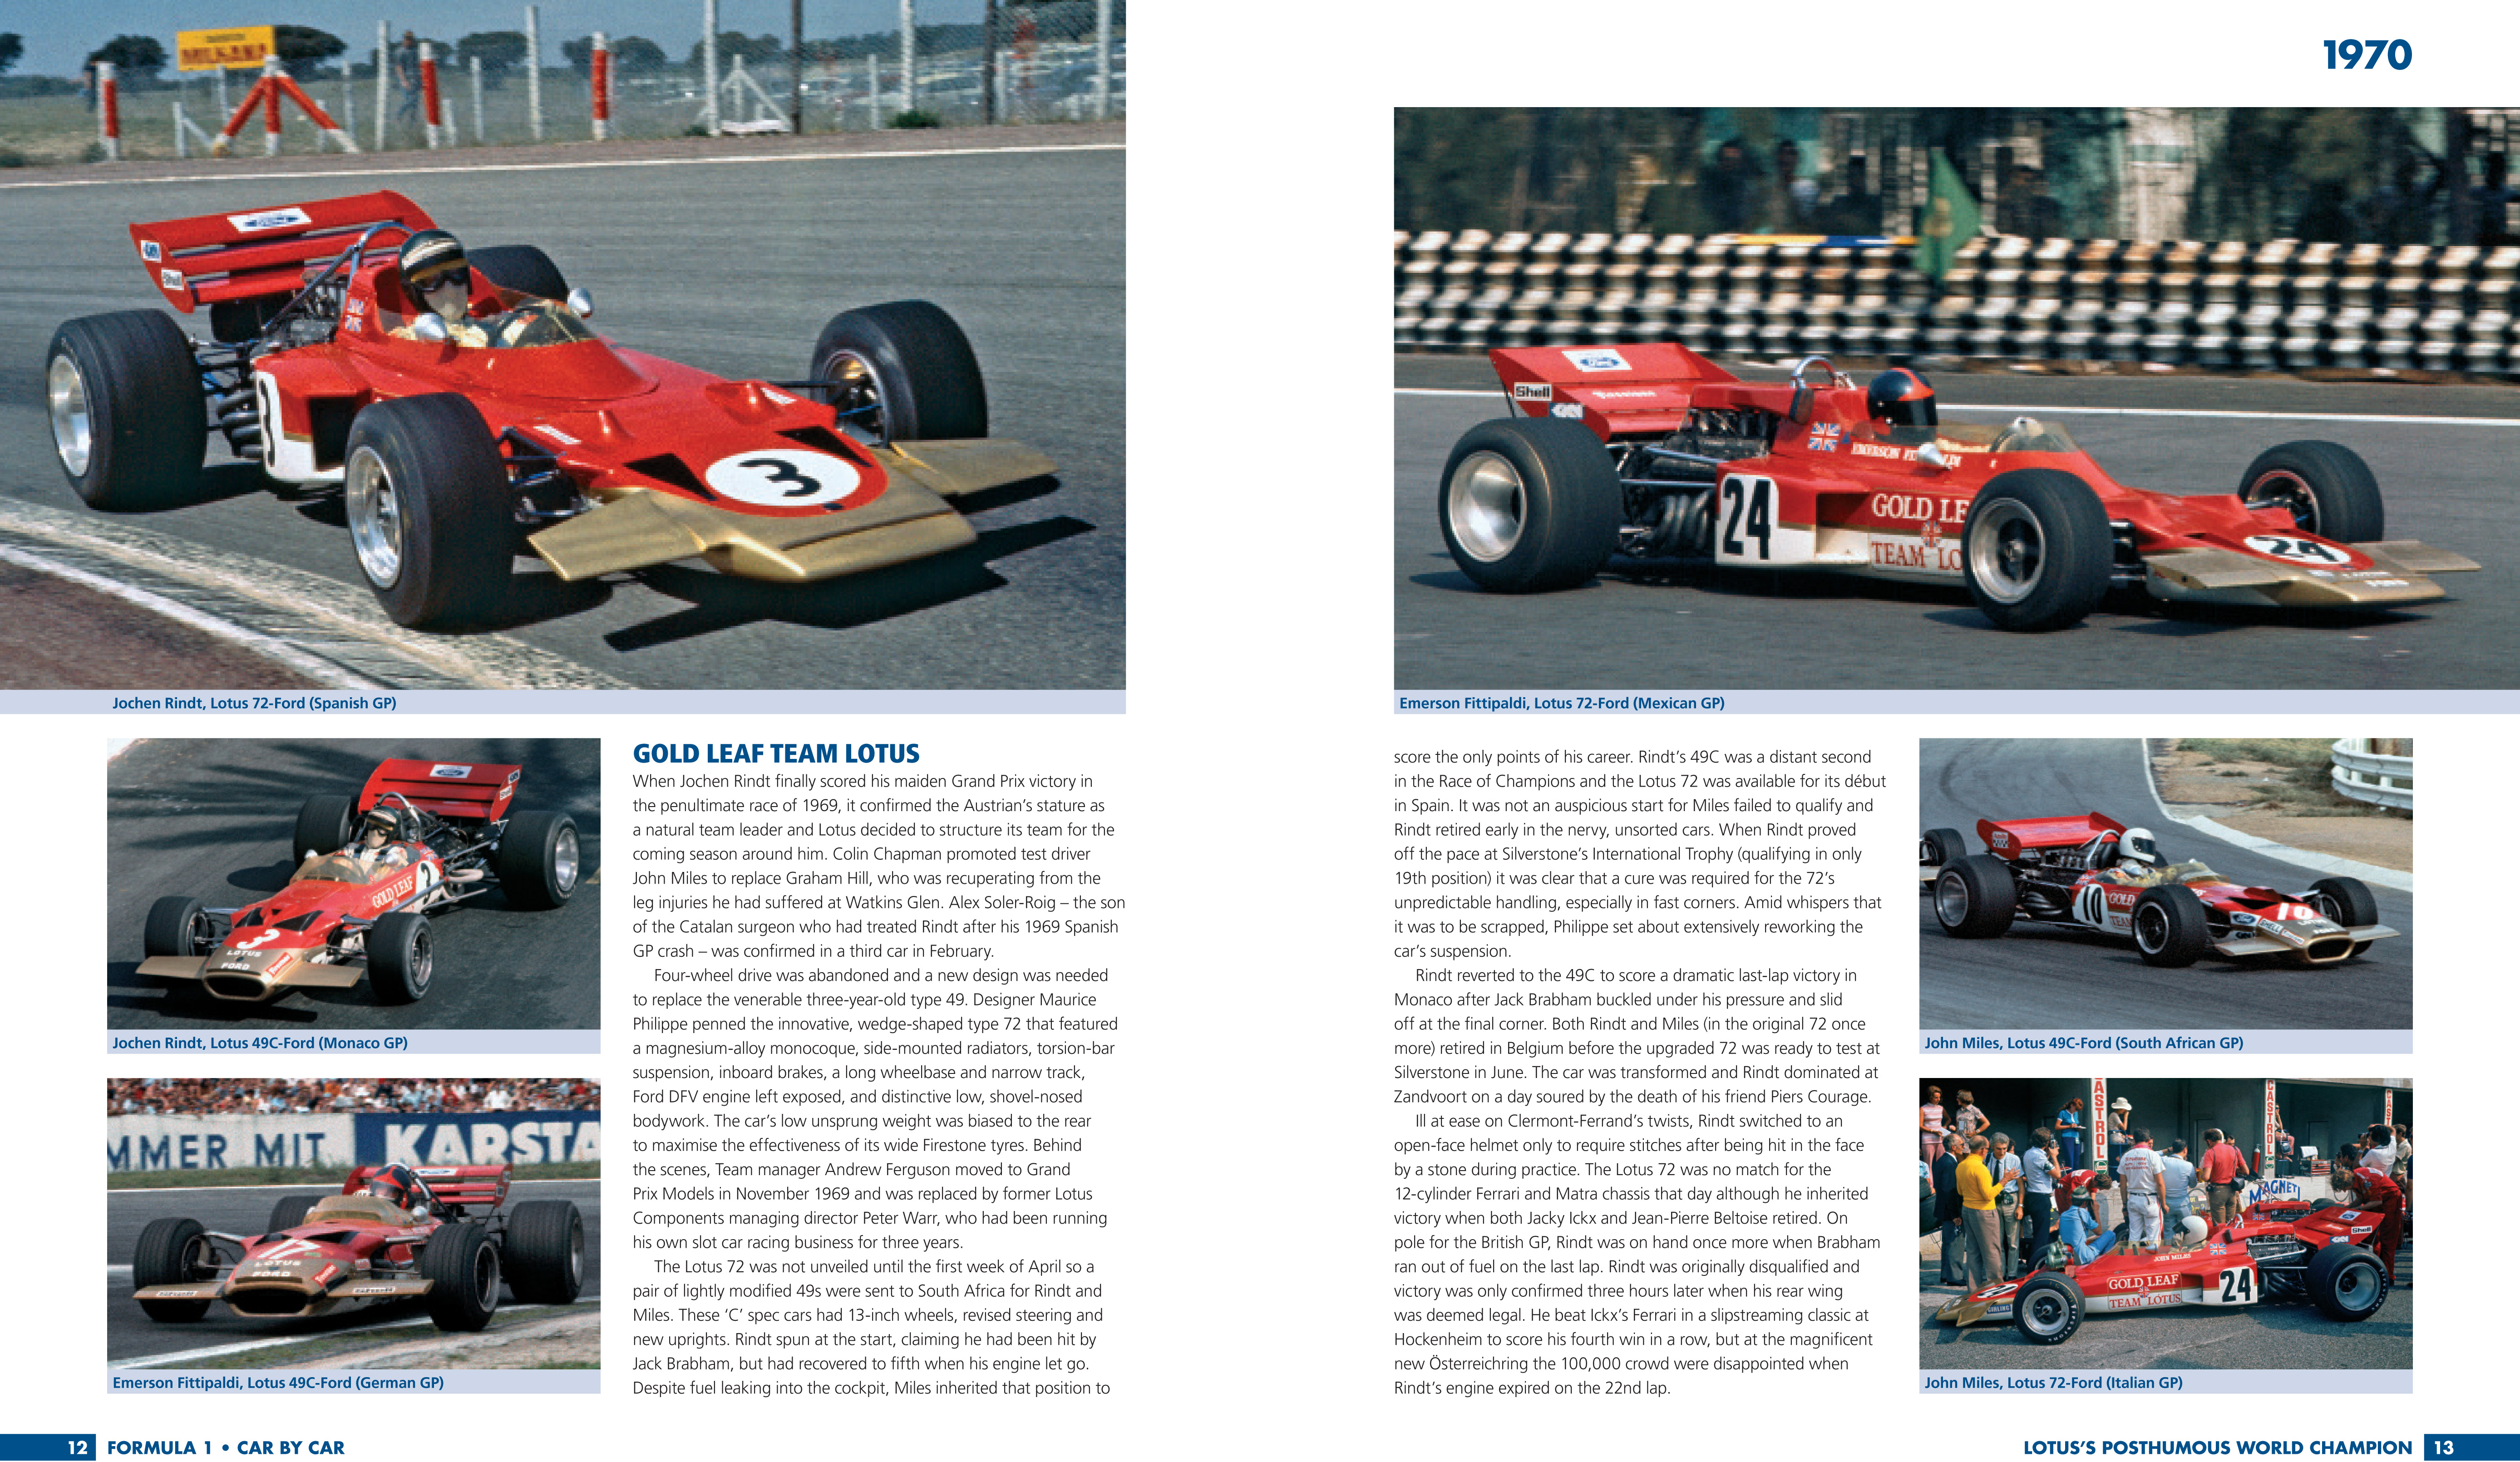 Formula 1: Car by Car 1970-79